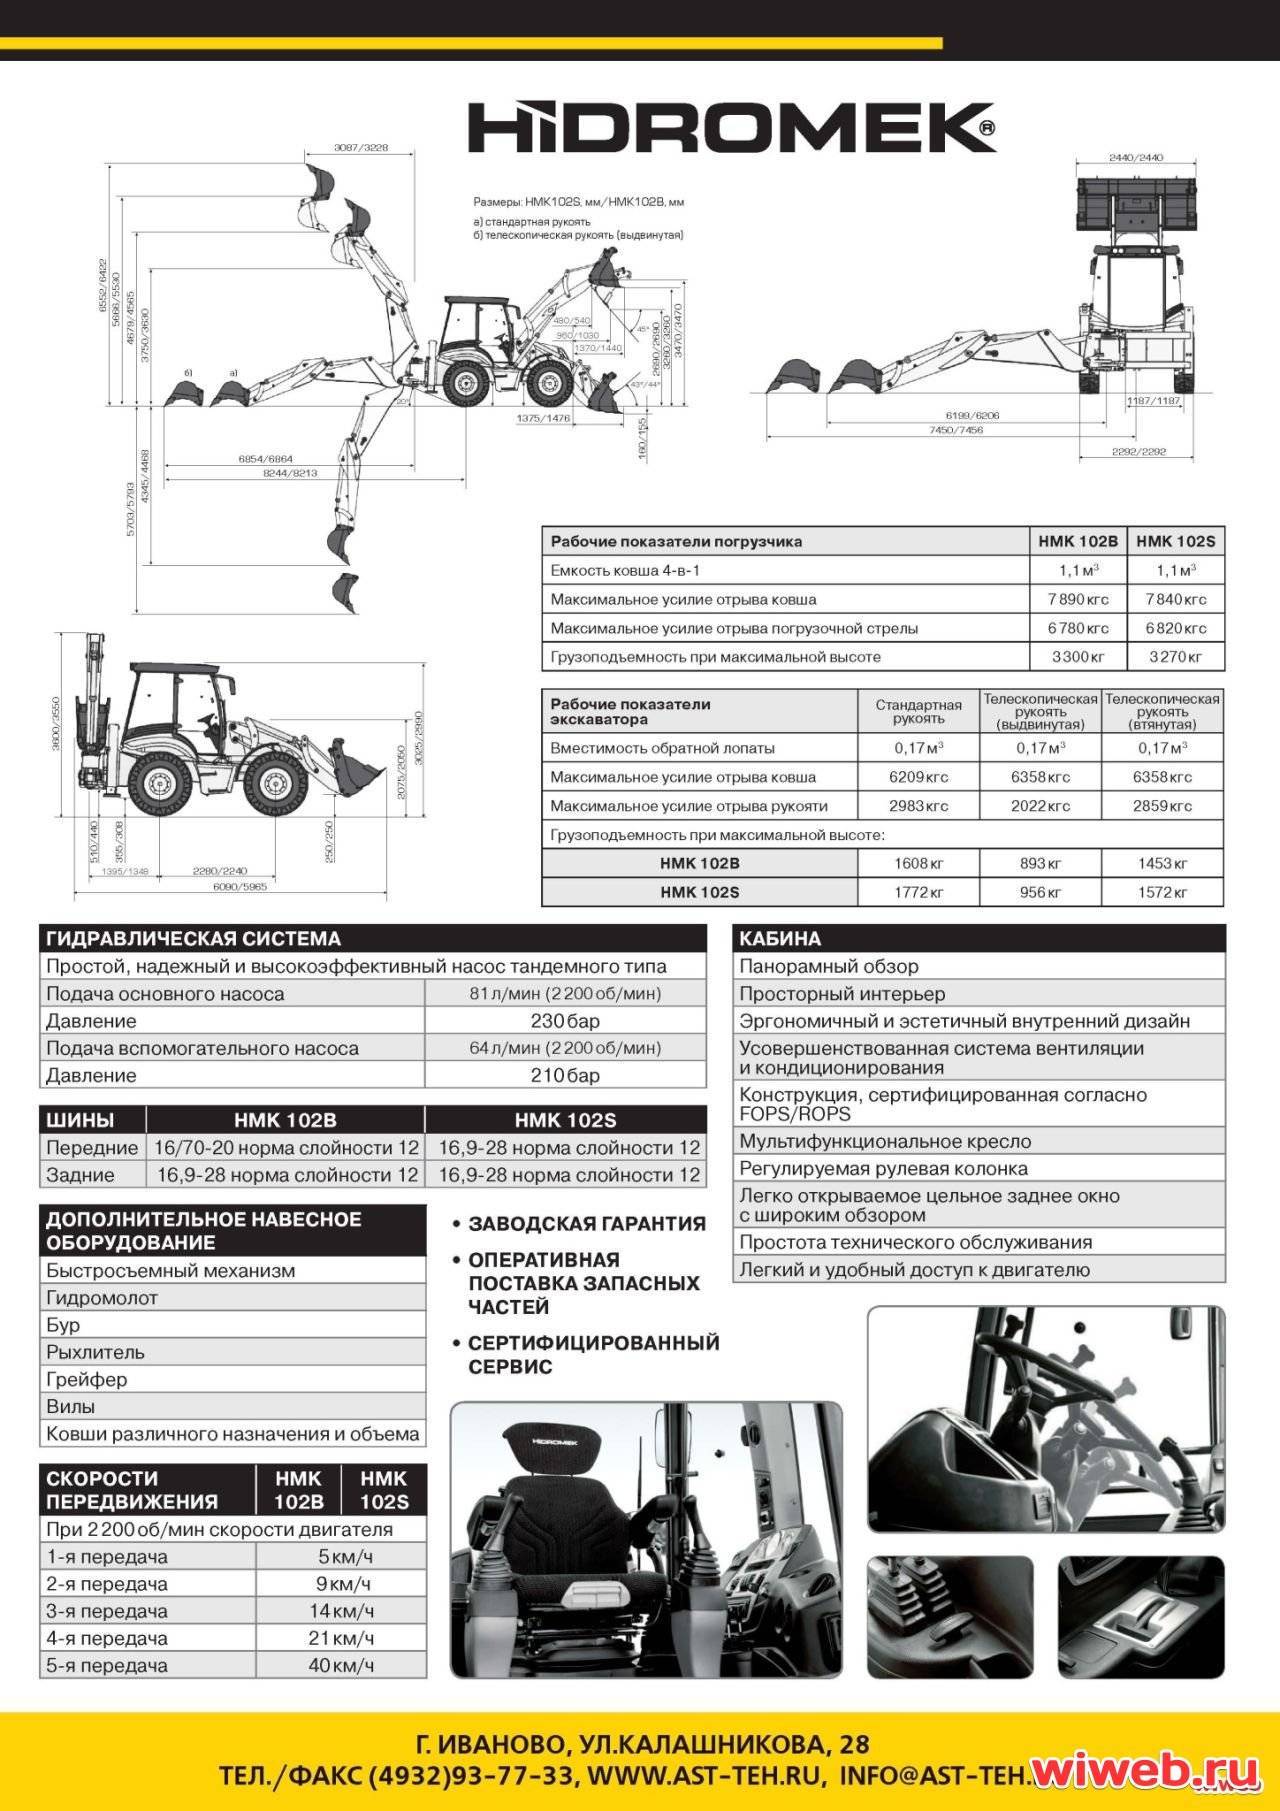 ✅ экскаватор-погрузчик hidromek 102b: s, hmk, отзывы, технические характеристики, обзор - tym-tractor.ru